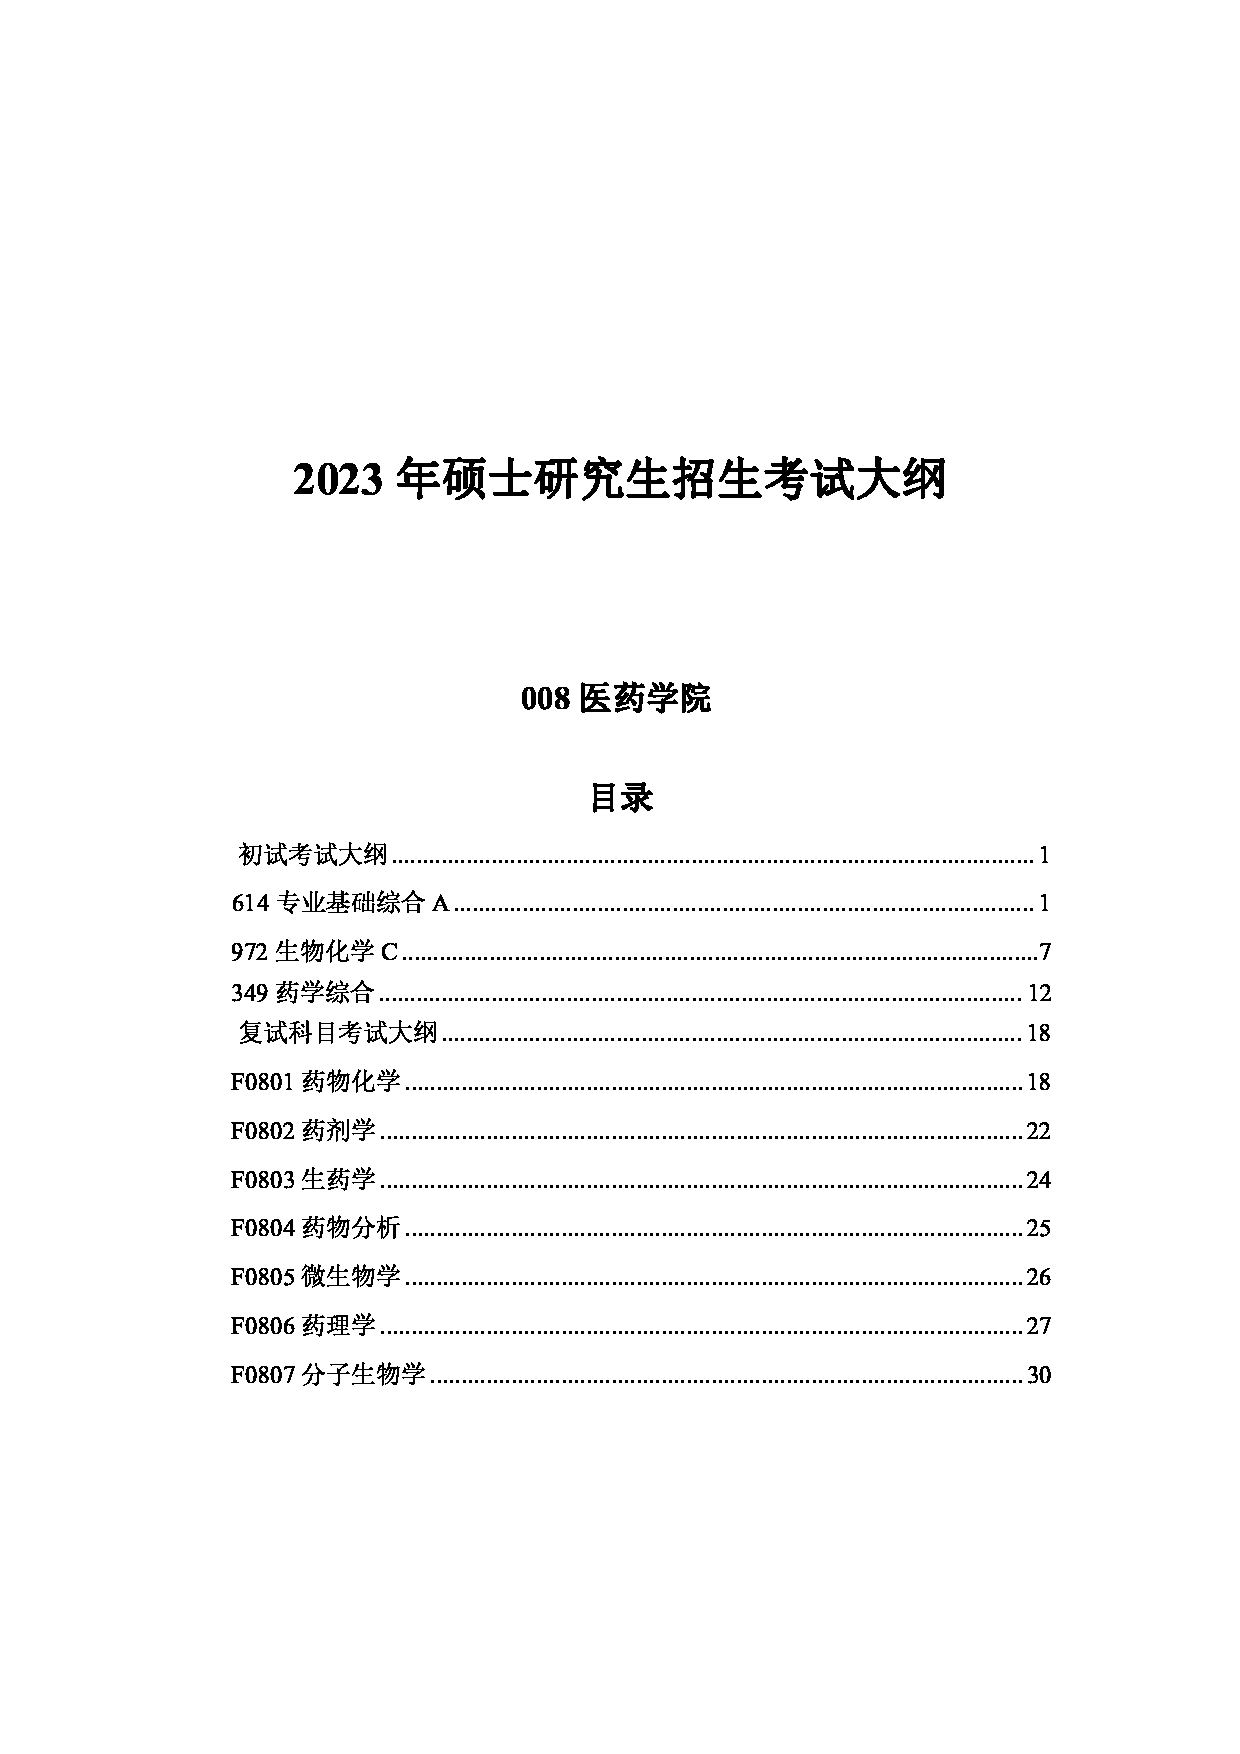 2023考研大纲：中国海洋大学2023年考研 008医药学院 考试大纲第1页